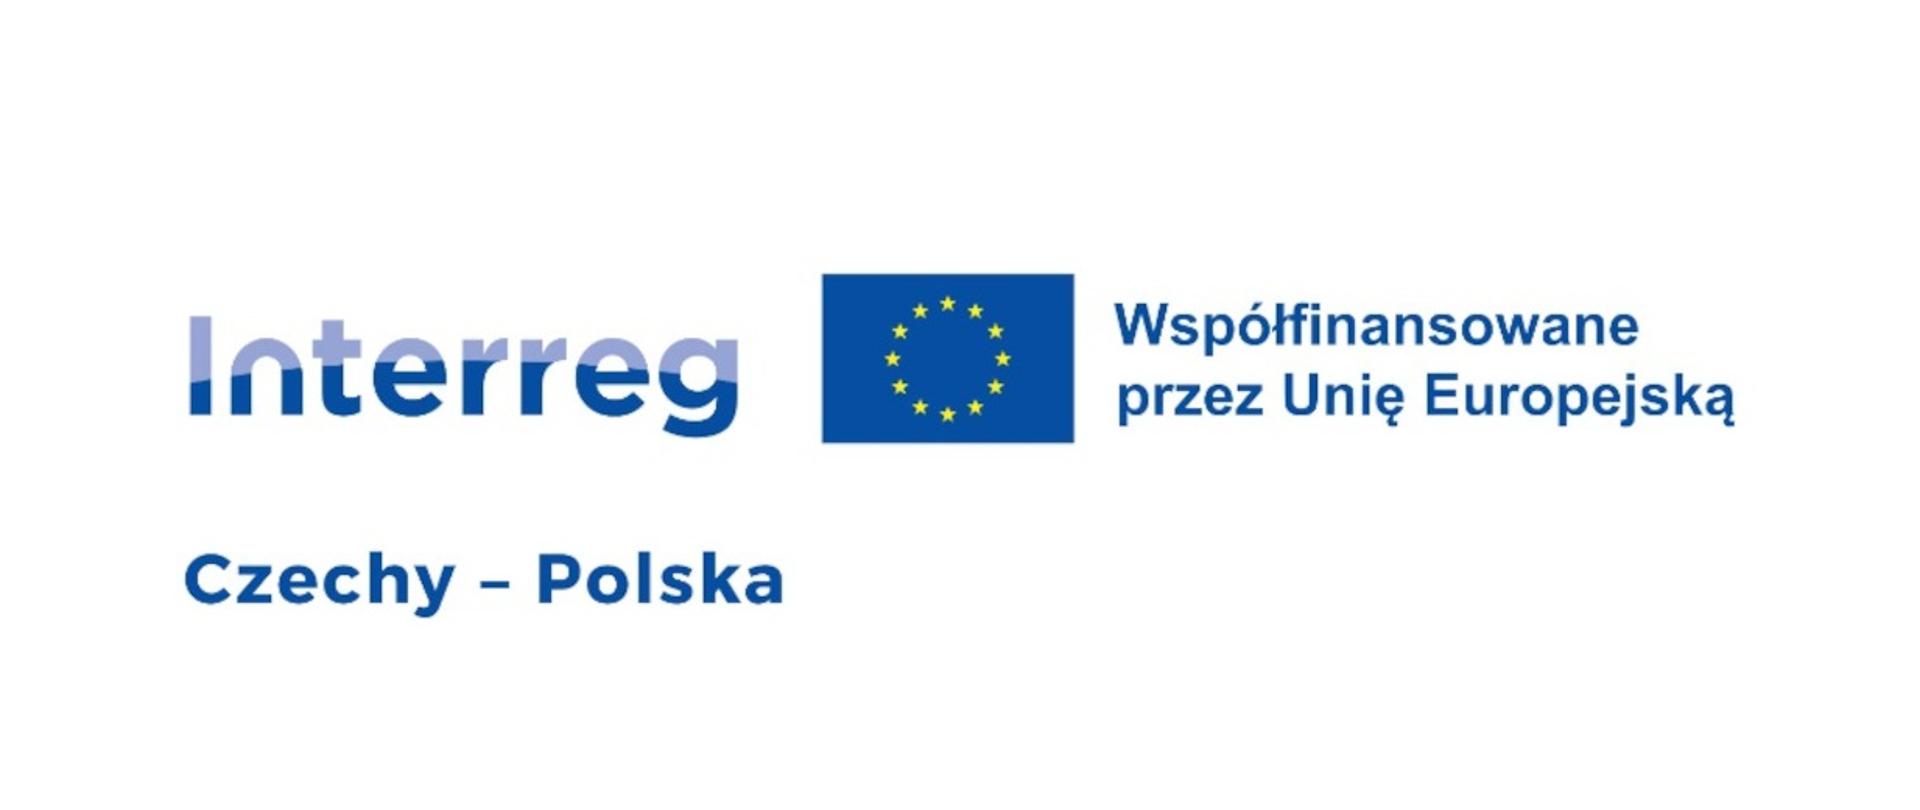 Interreg Czechy - Polska. Współfinansowane przez Unię Europejską.